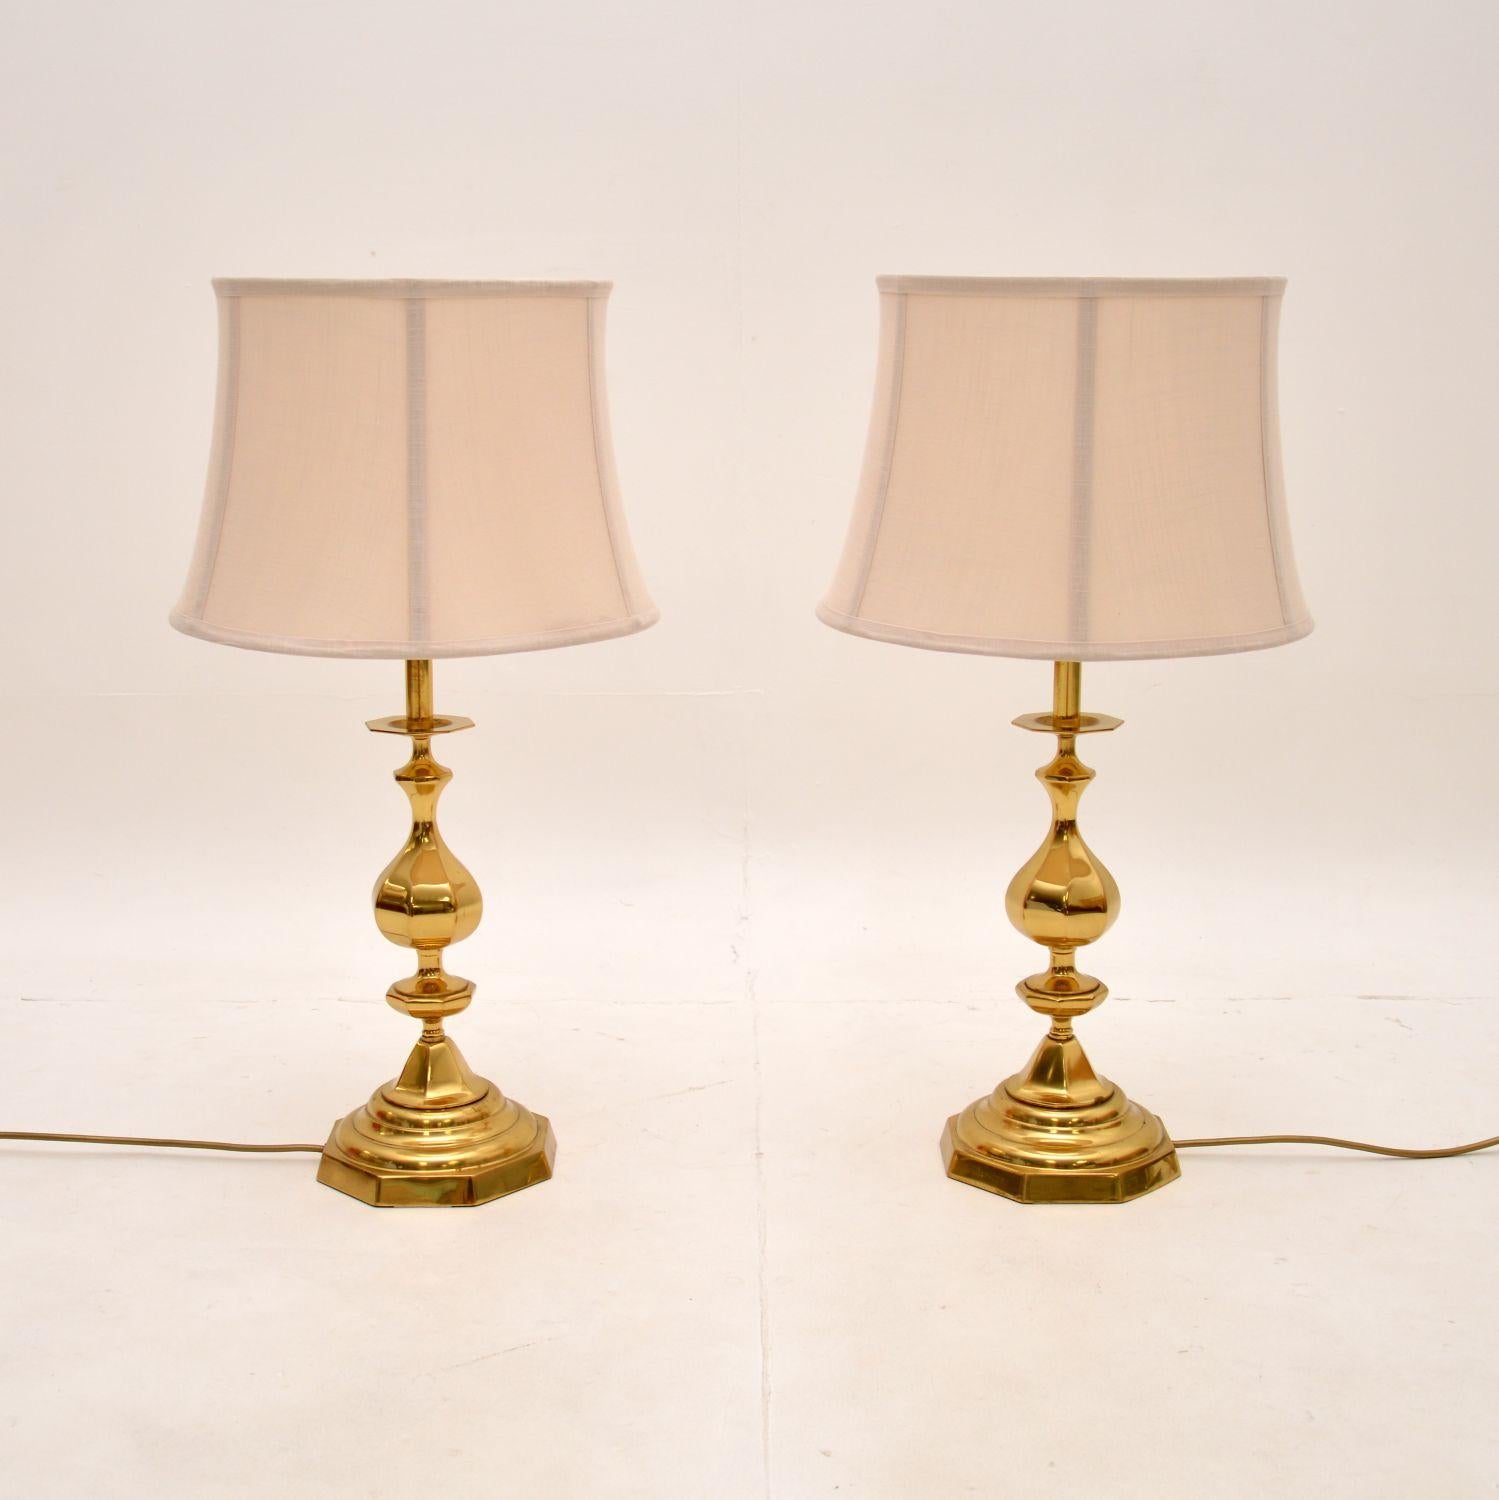 Une grande et impressionnante paire de lampes de table vintage en laiton. Fabriqués en Angleterre, ils datent des années 1970.

Ils sont très élégants et de taille conséquente. La qualité est fantastique, ils sont en laiton massif et ont un design